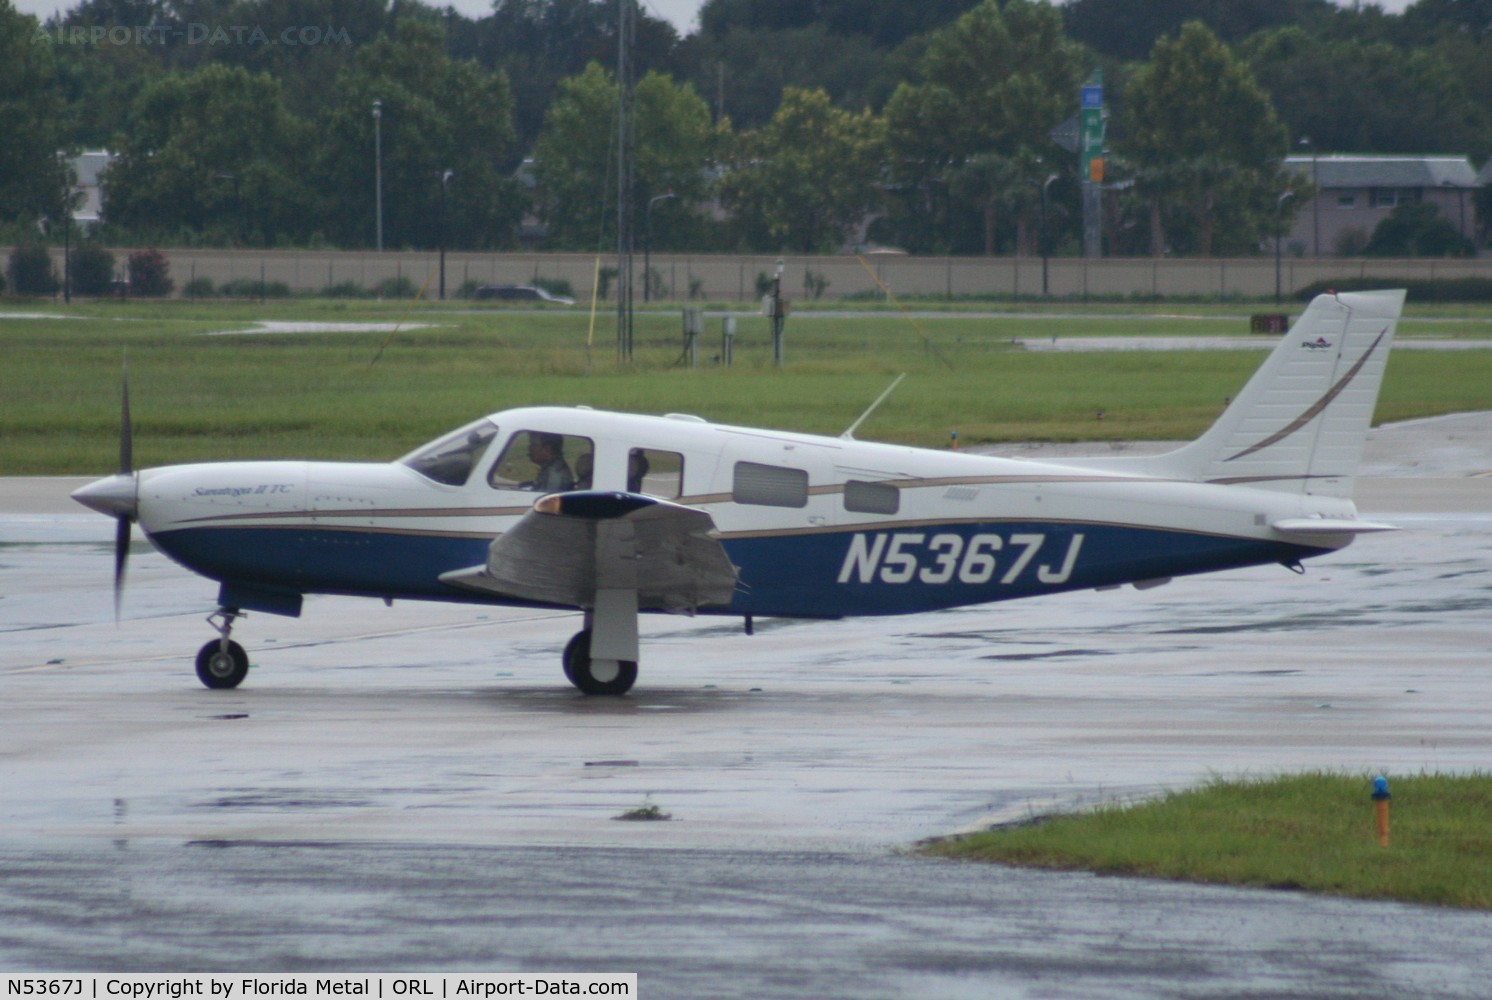 N5367J, 2003 Piper Saratoga II TC C/N 3257320, PA-32R-301T